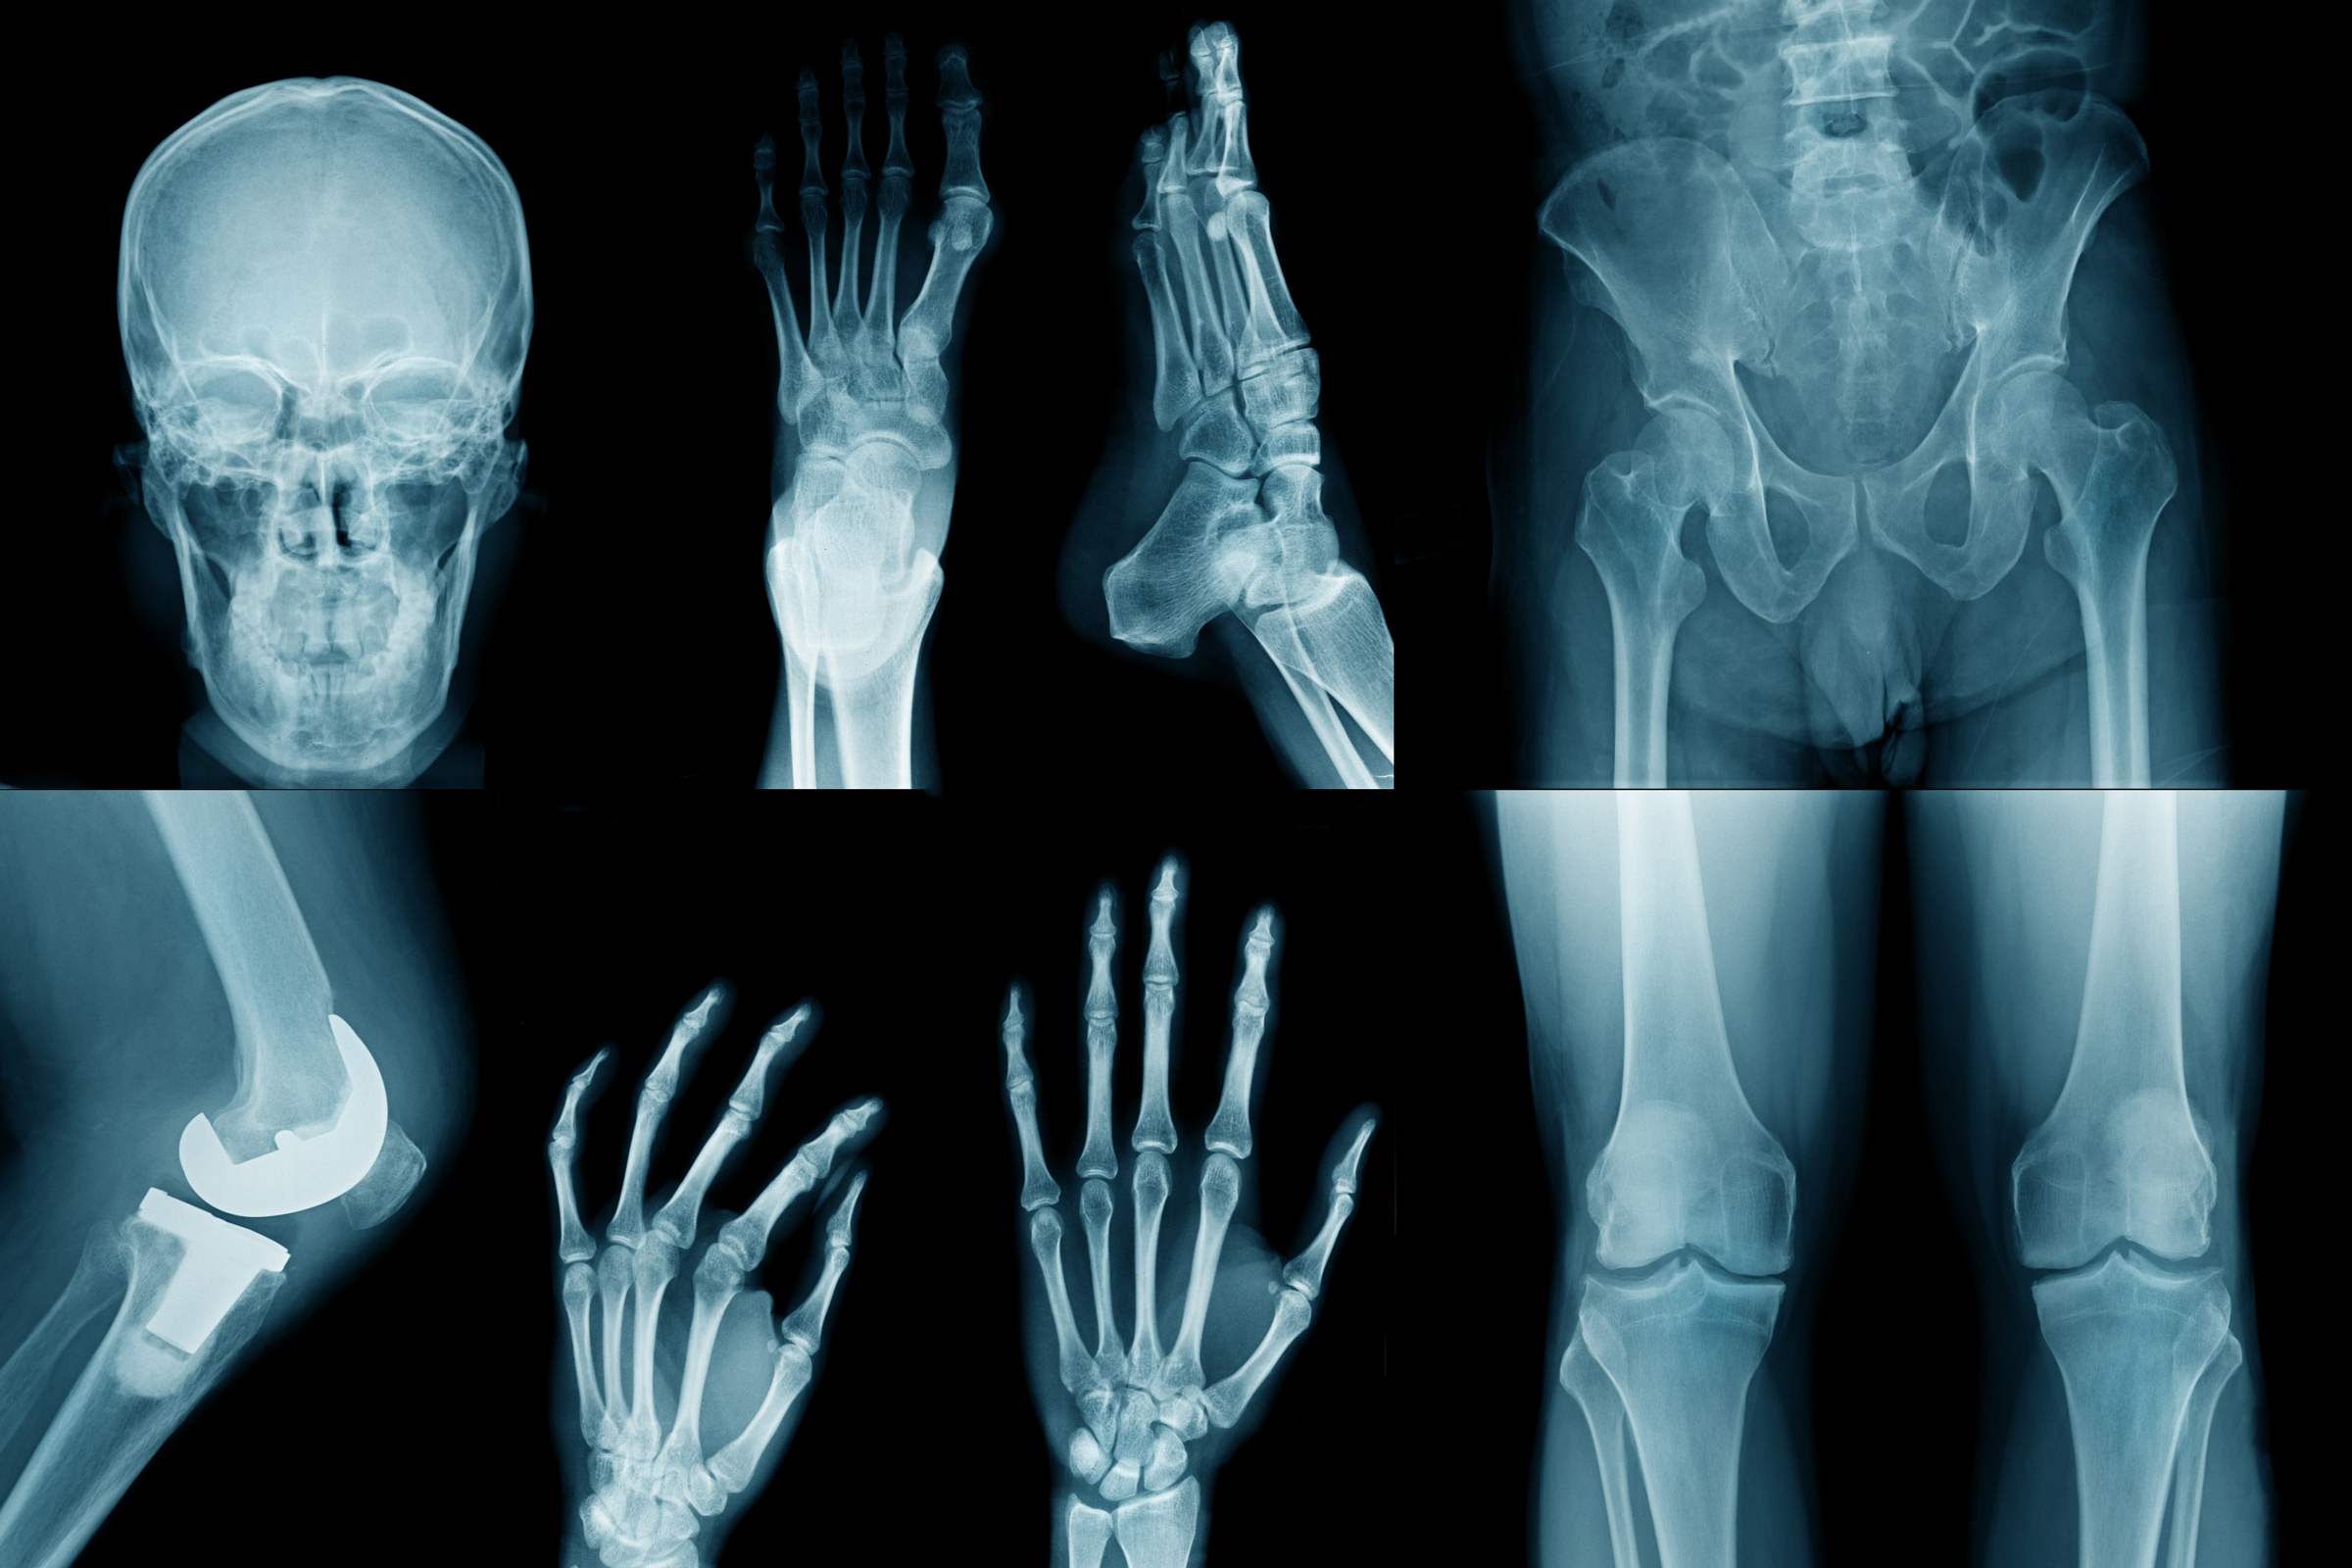 Röntgenbilder enthalten nicht nur sensible Daten, sondern auch wertvolle Rohstoffe. (Foto: angkhan, iStock)